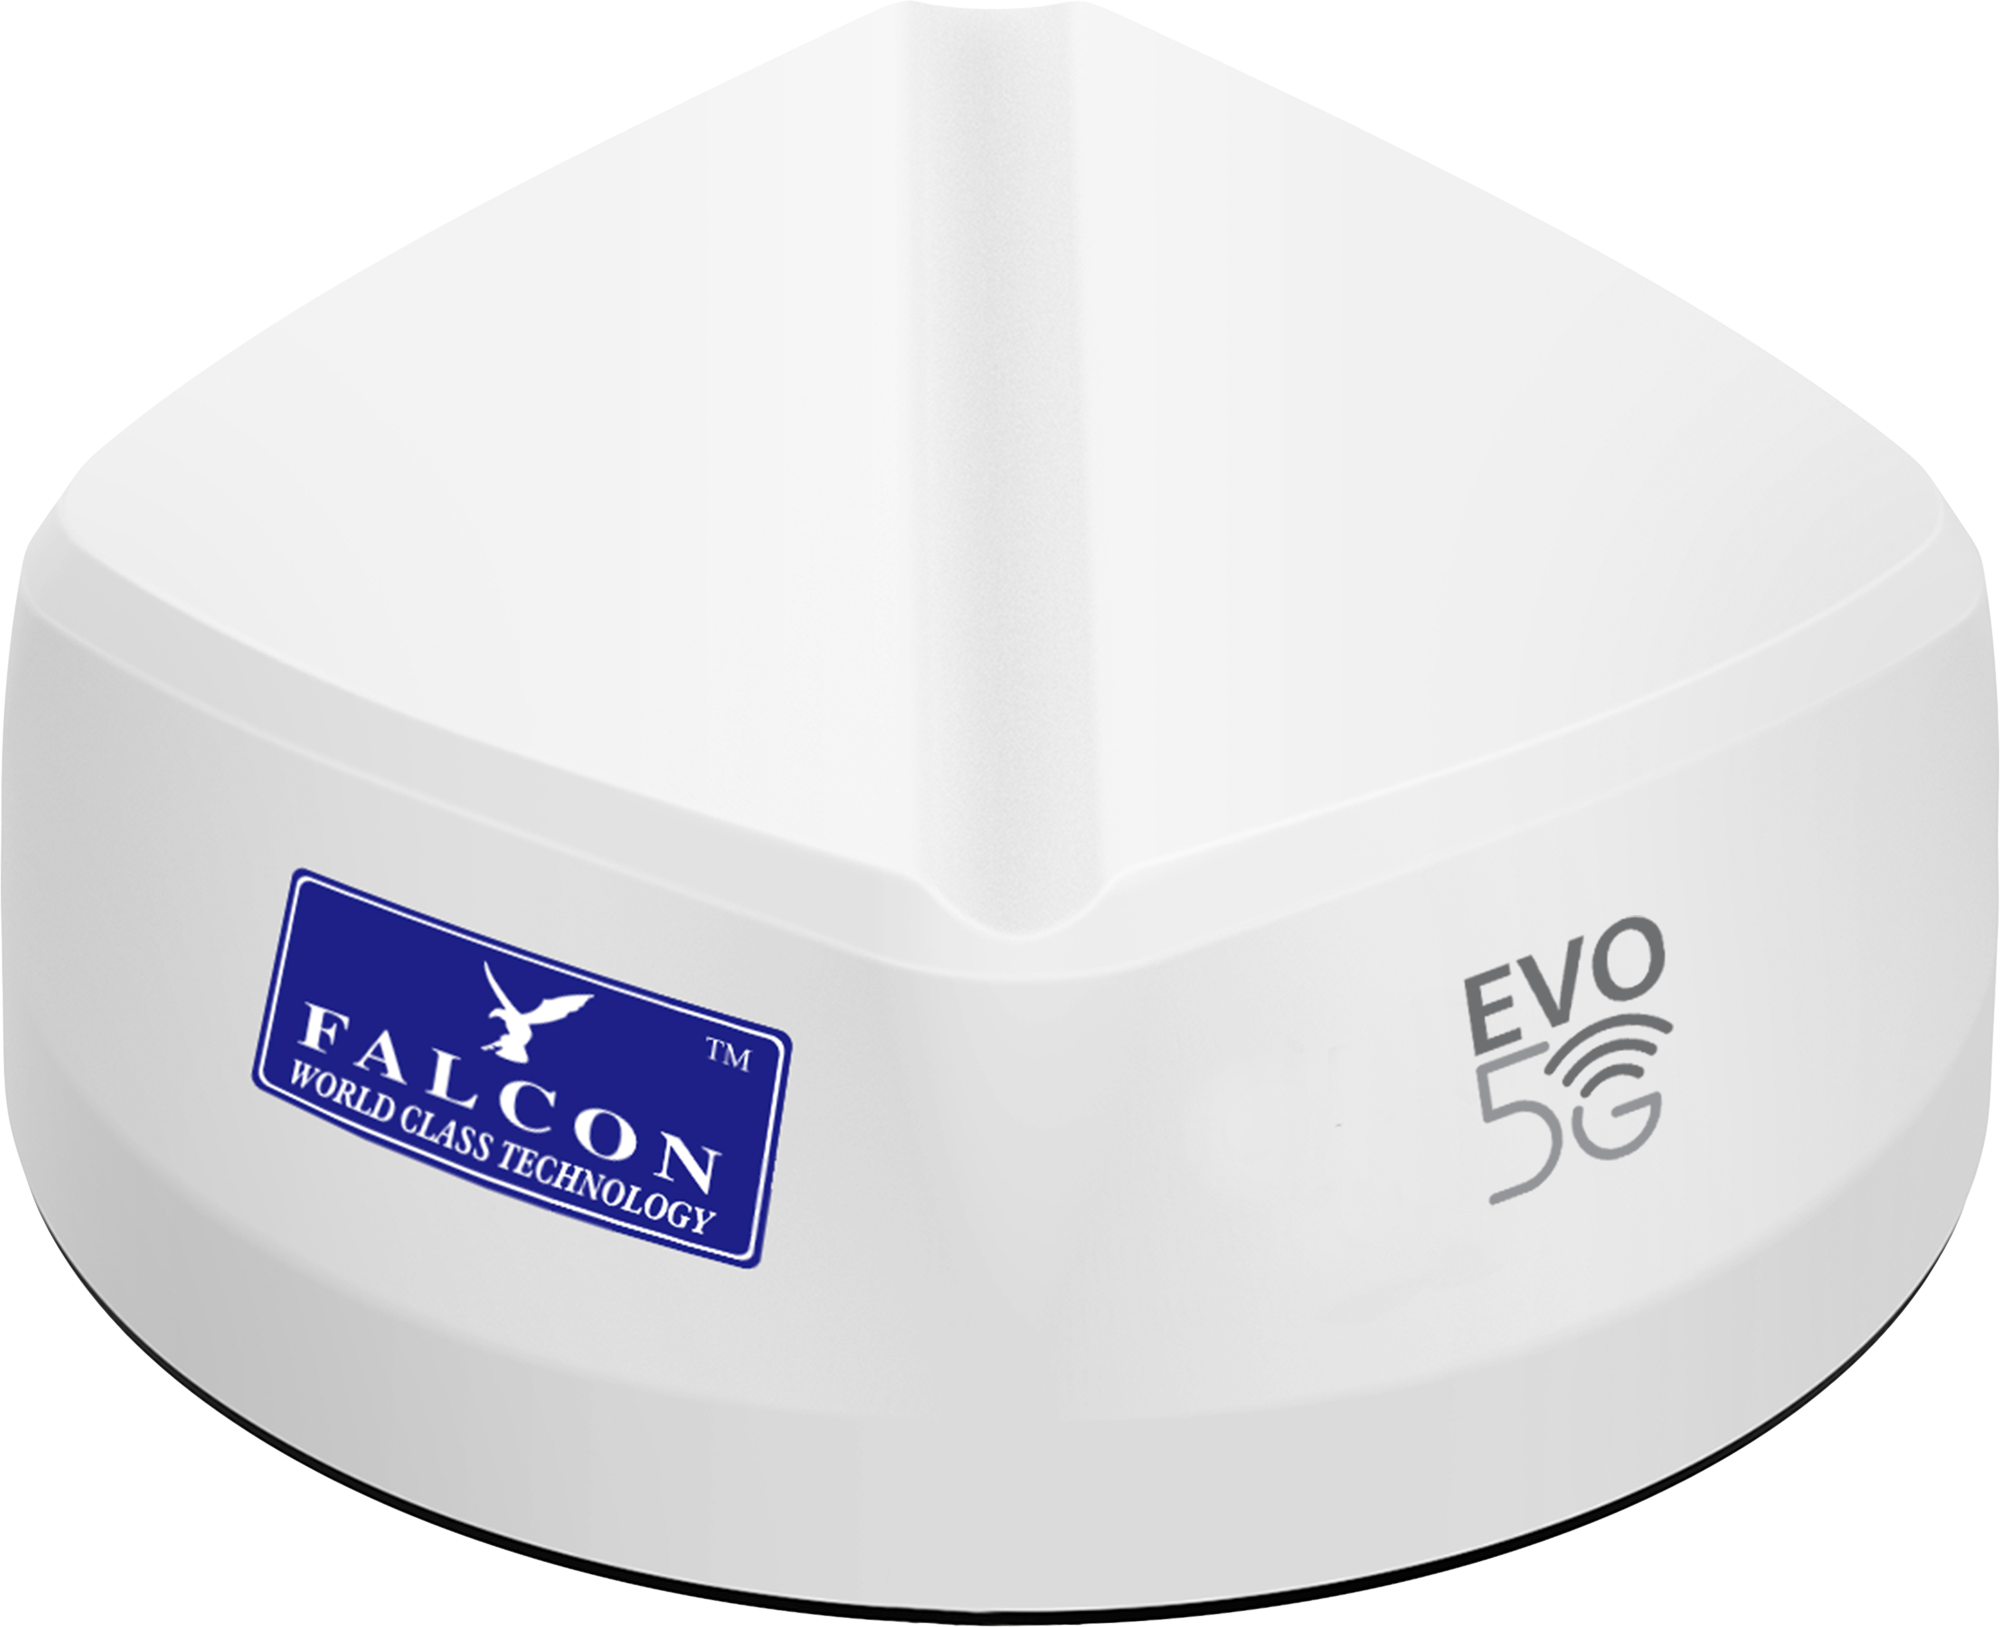 Falcon EVO 5G LTE Dachantenne mit mobilem 1800 Mbit/s 5G Cat 20 Router